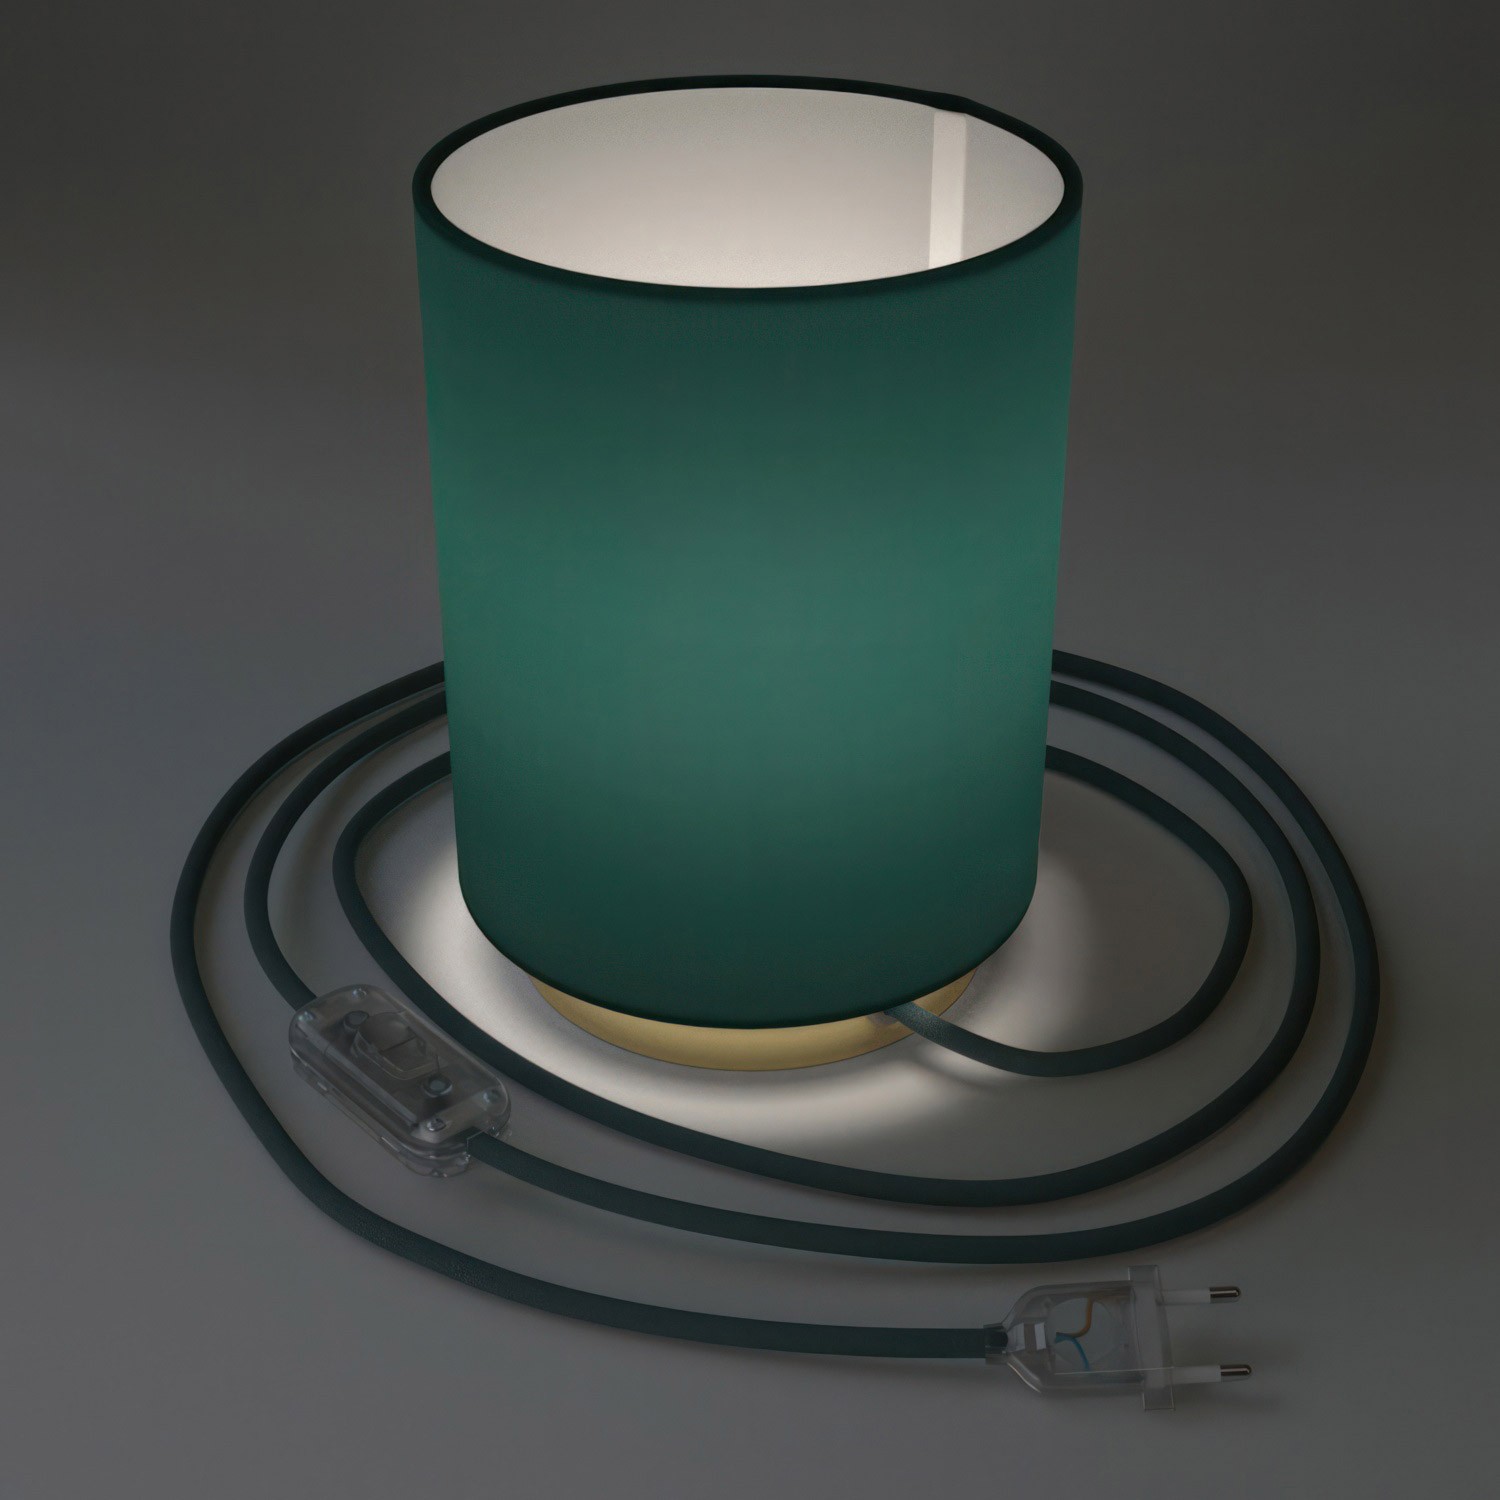 Posaluce i metall med Cilindro Cinette Petrolblå lampskärm, komplett med textilkabel, sladdströmbrytare och 2-polig stickpropp.